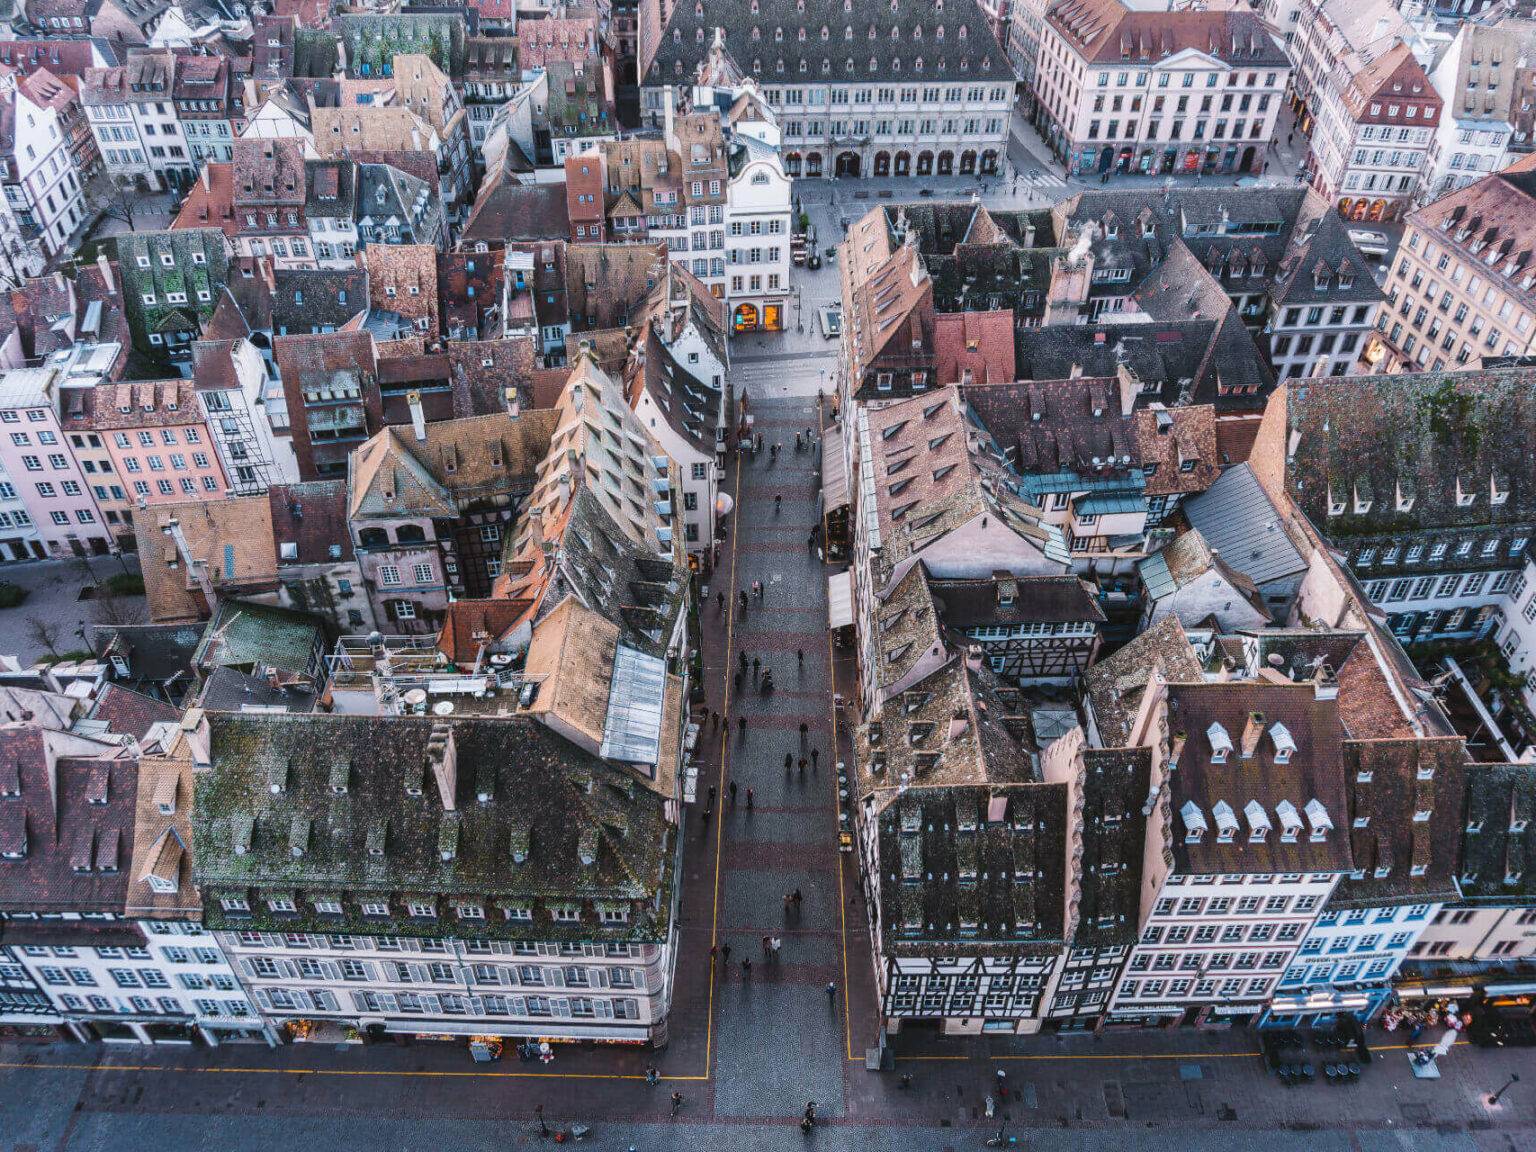 Die Aussicht vom Münster auf die Häuser und Cafés ist beeindruckend.